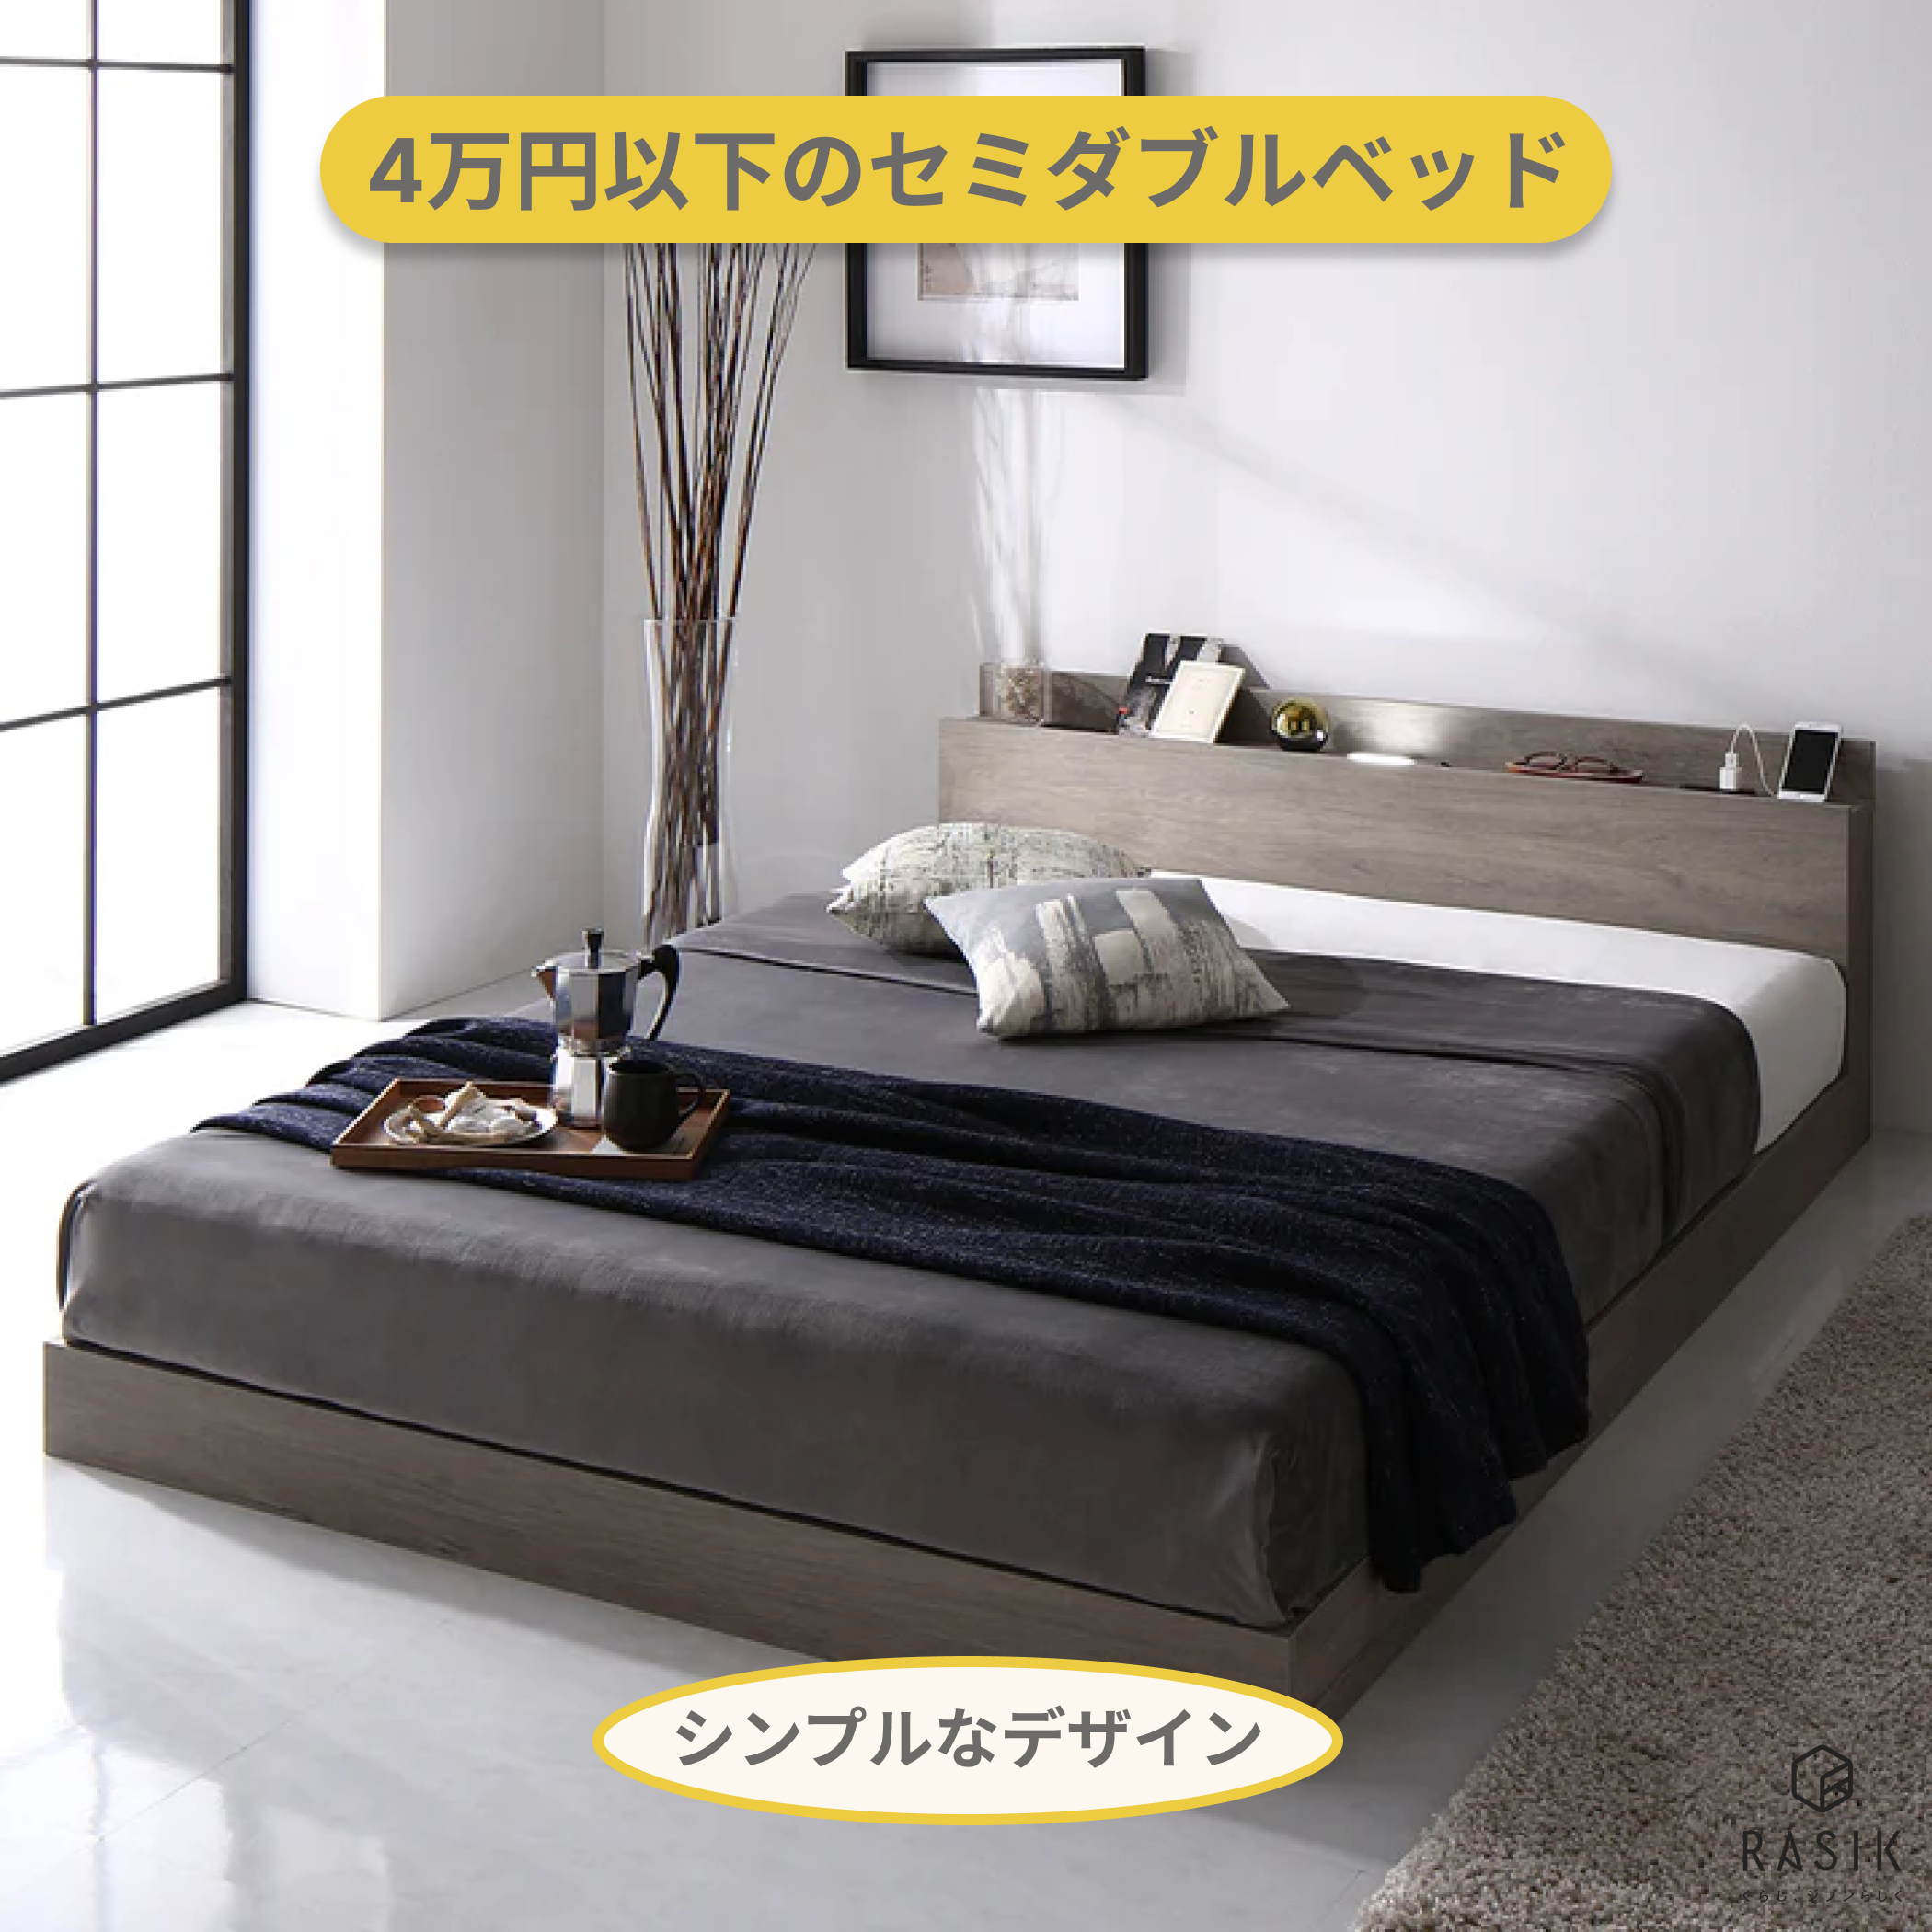 4万円以下のセミダブルベッド